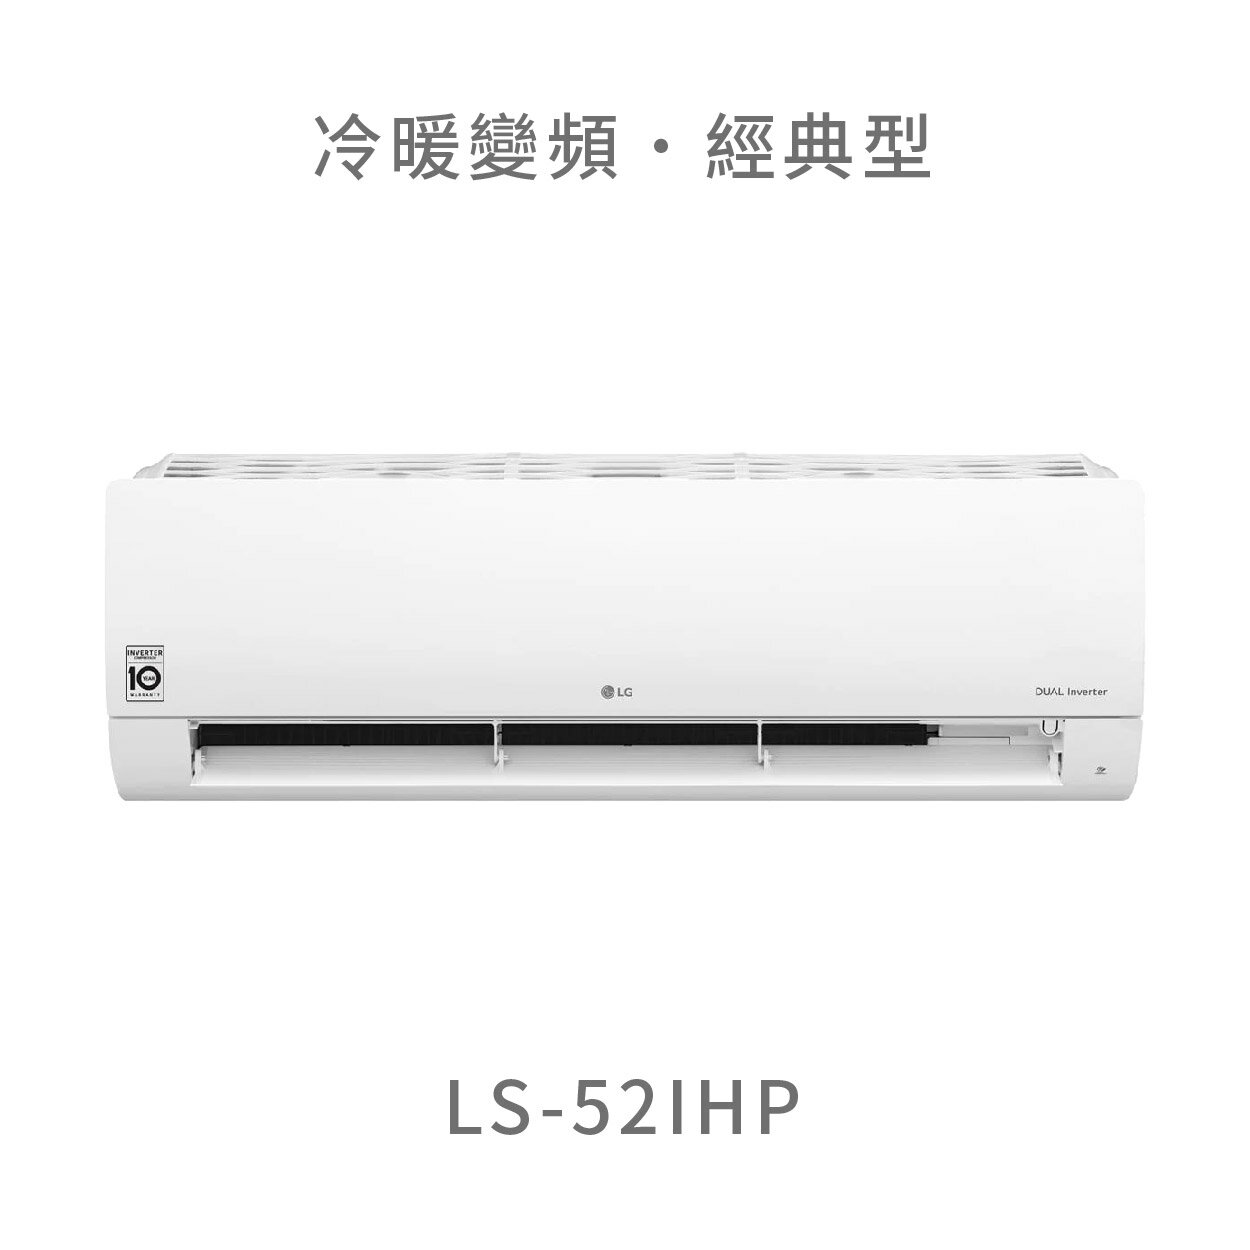 【點數10%回饋】【標準安裝費用另計】lg ls-52ihp 5.2kw wifi雙迴轉變頻空調 - 經典冷暖型